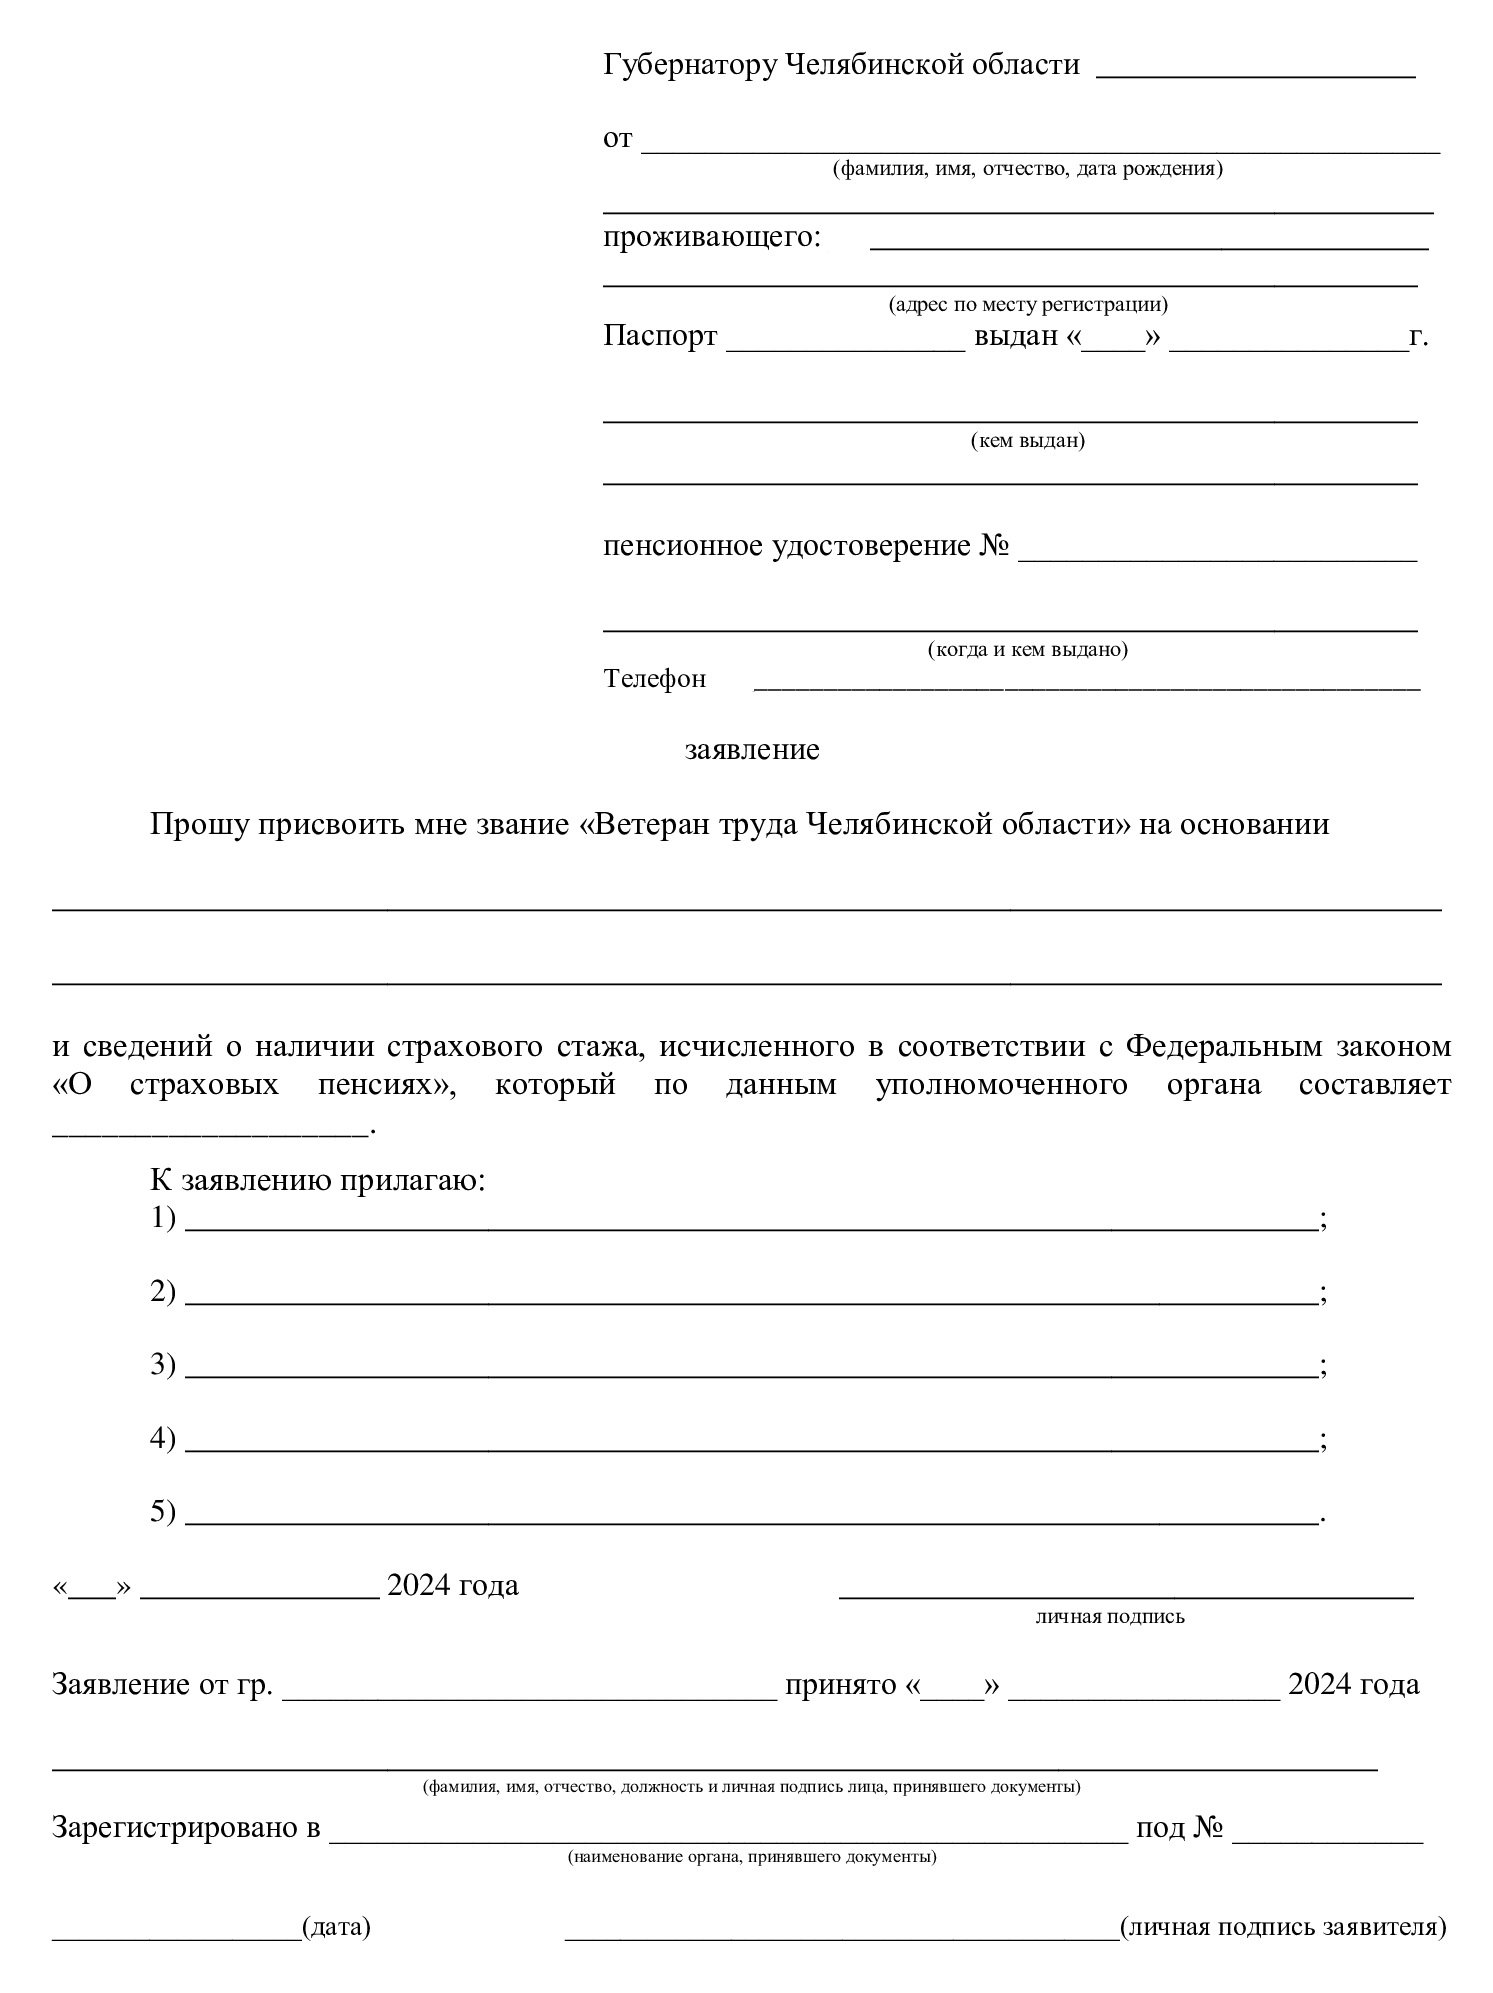 Бланк заявления на ветерана труда Челябинской области